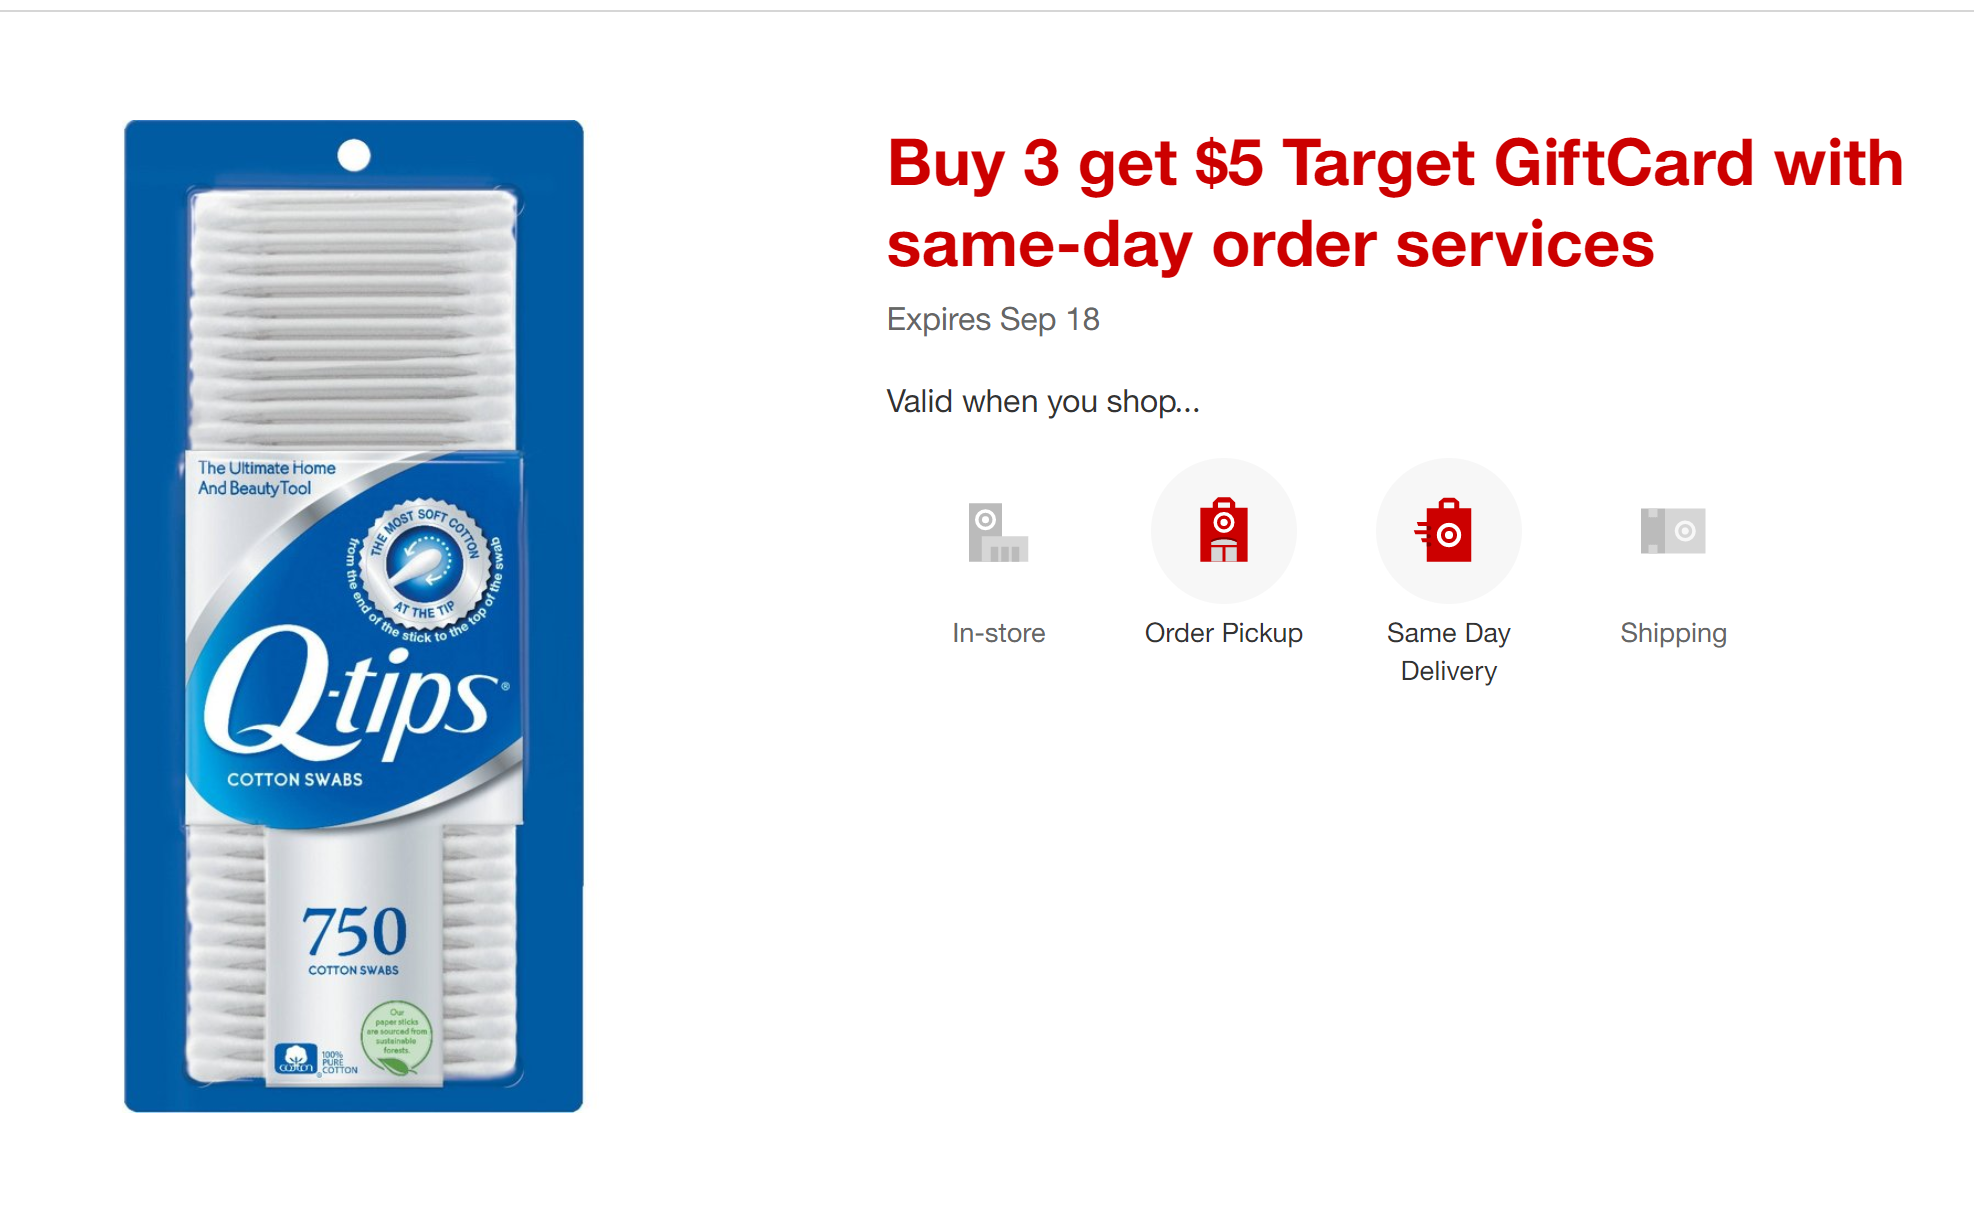 Target  Buy 3 get $5 Target GiftCard 精选商品买3件送$5礼卡